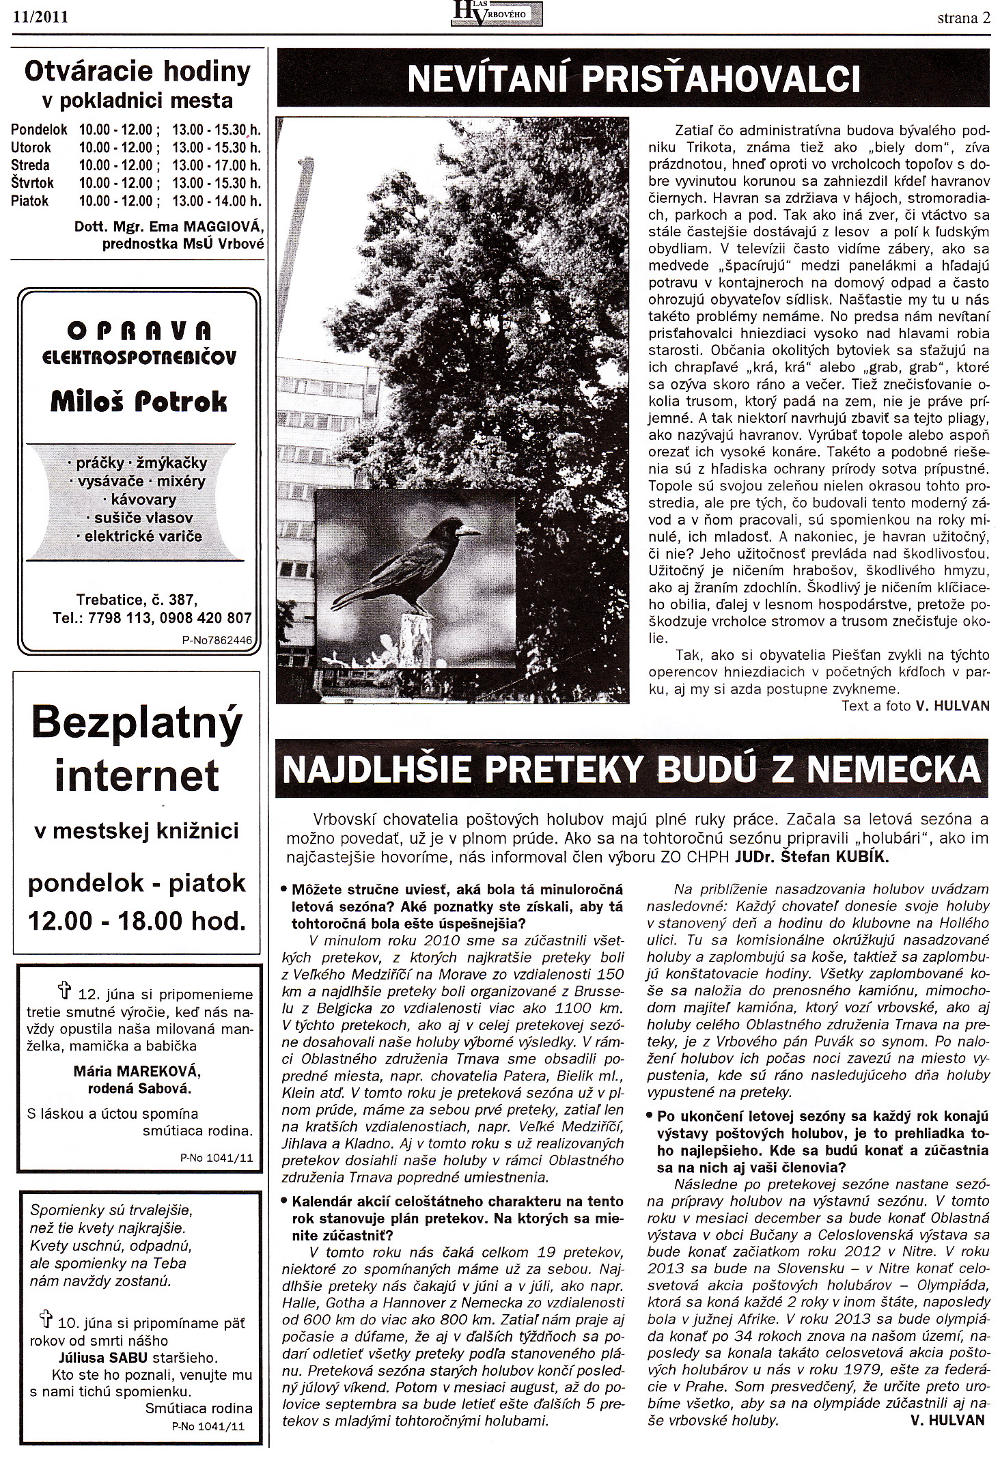 Hlas Vrbového 11/2011, strana 2